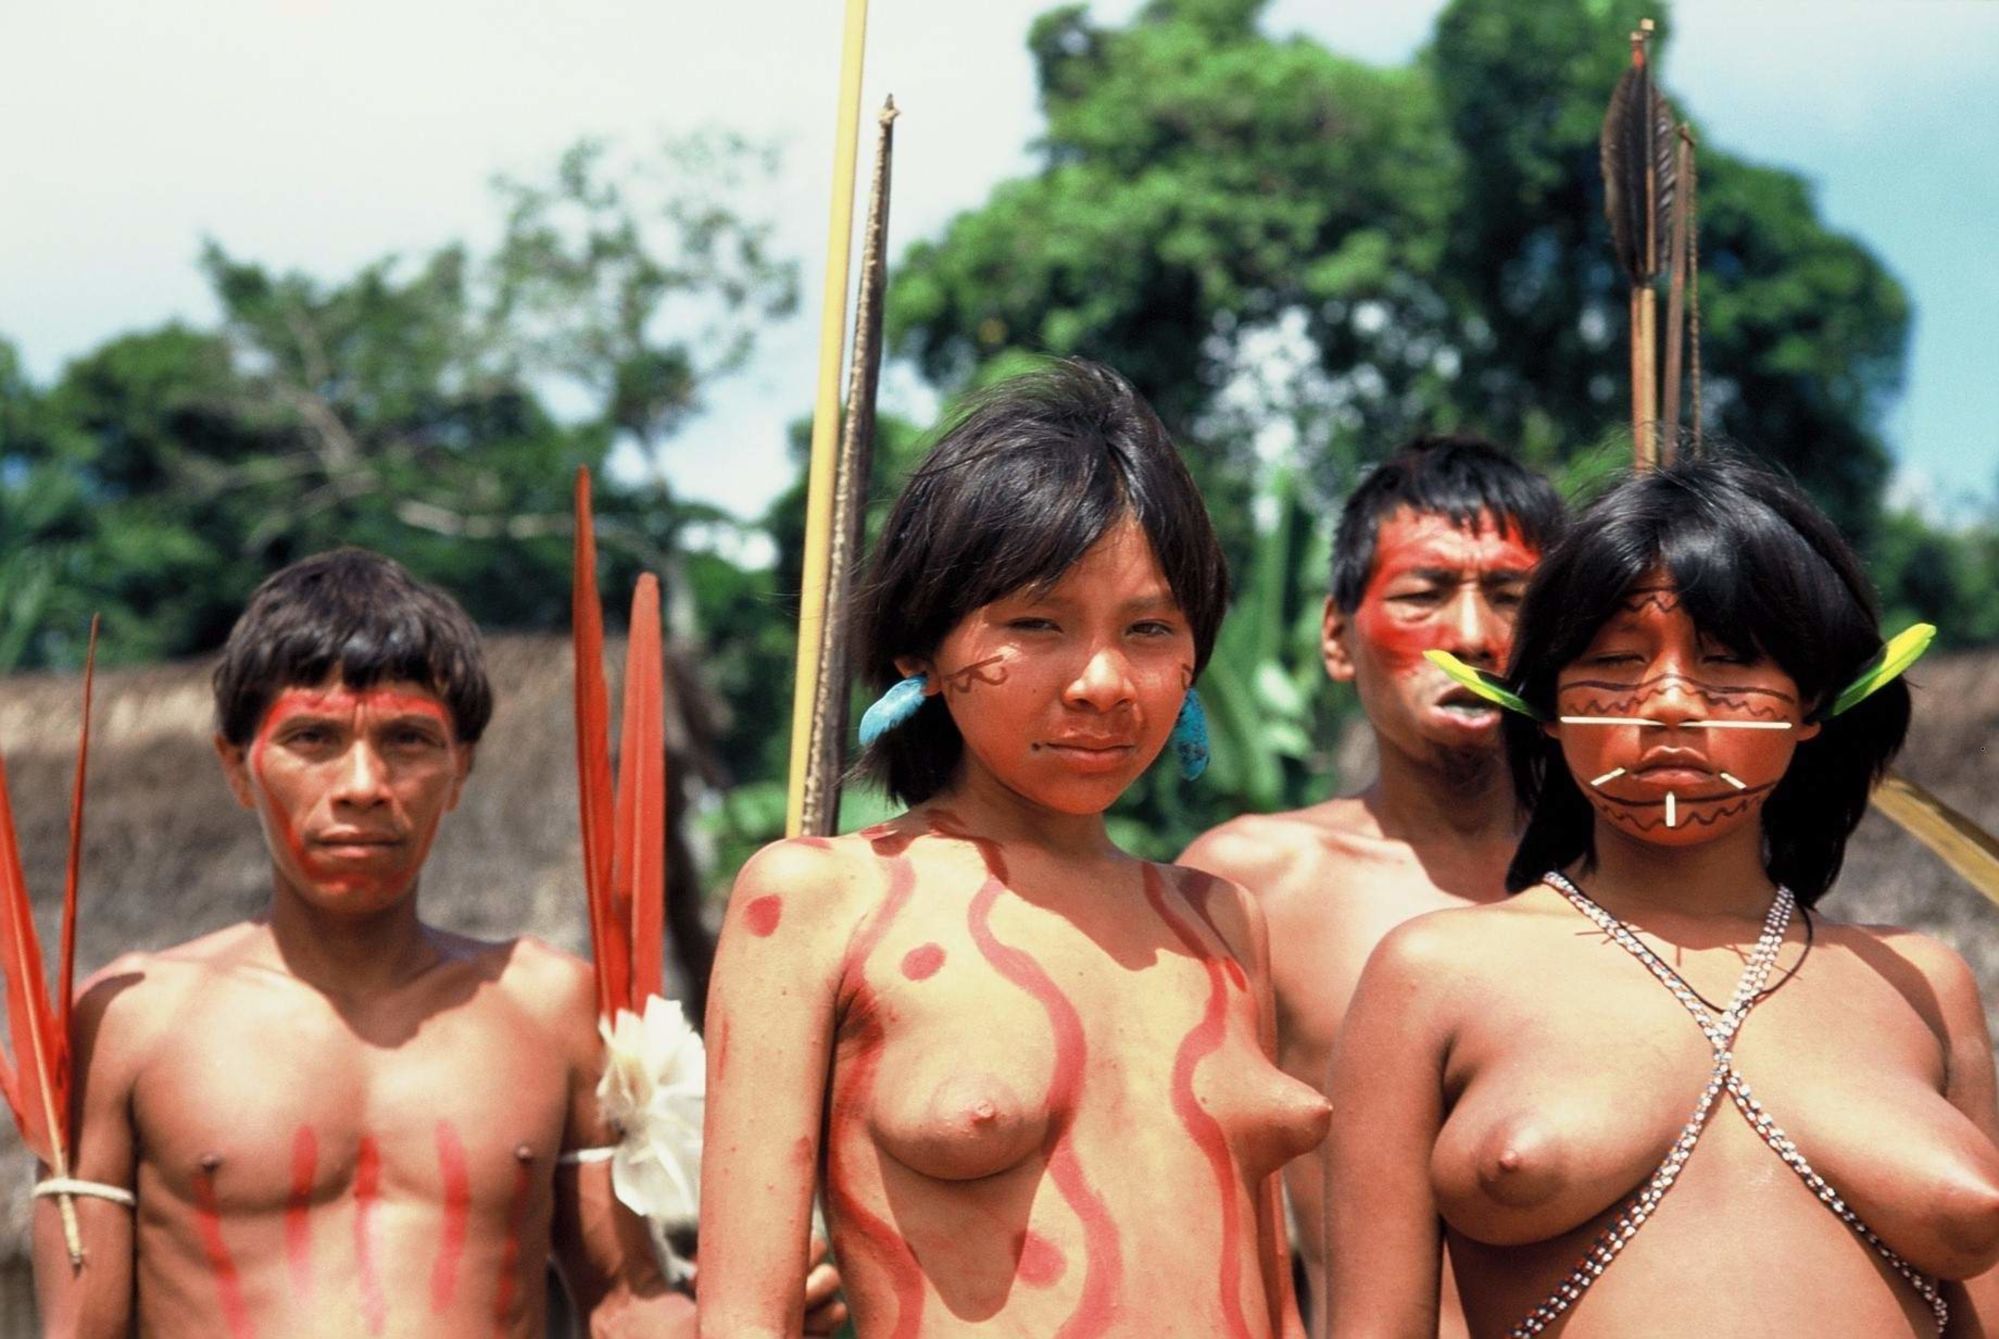 голые дикие племена мужчины фото 87